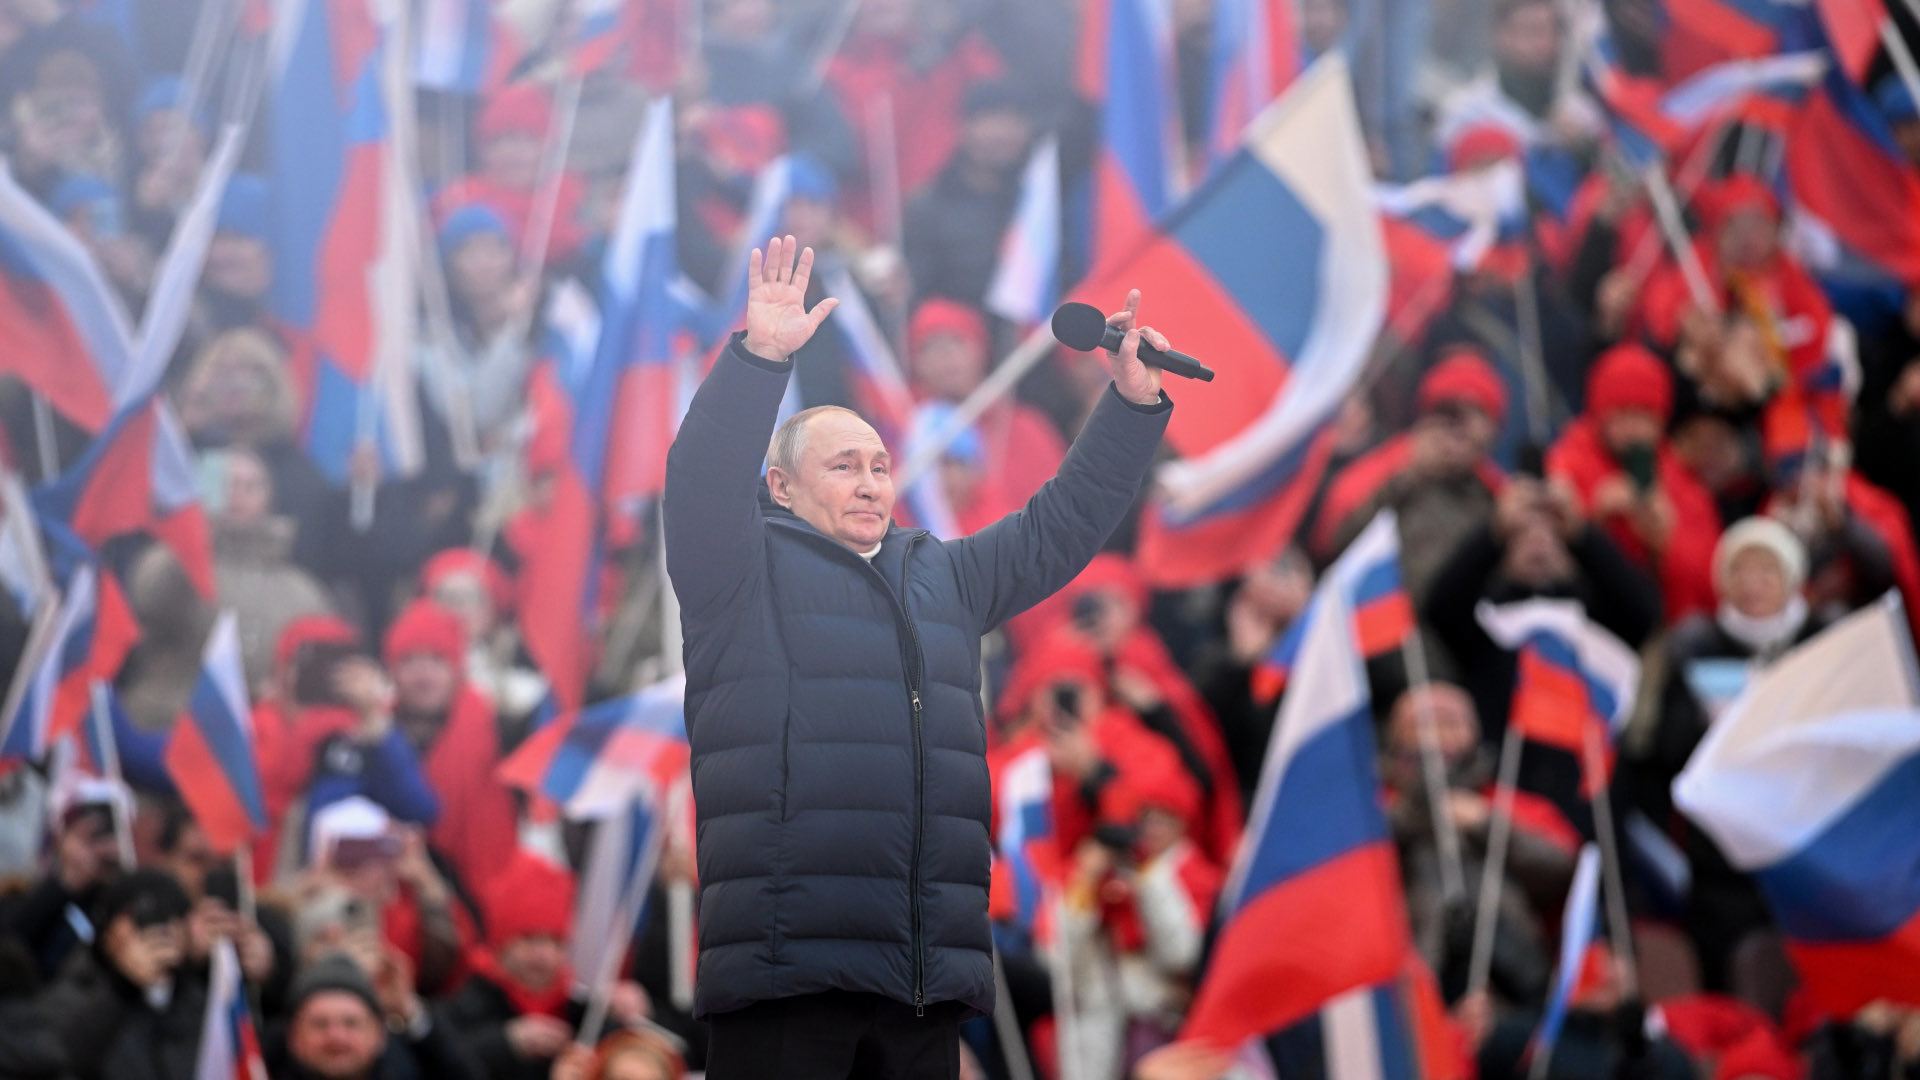 Ông Putin nhận được sự ủng hộ rộng rãi cho chiến dịch tranh cử, dù không đại diện cho đảng phái nào (ảnh: RT)